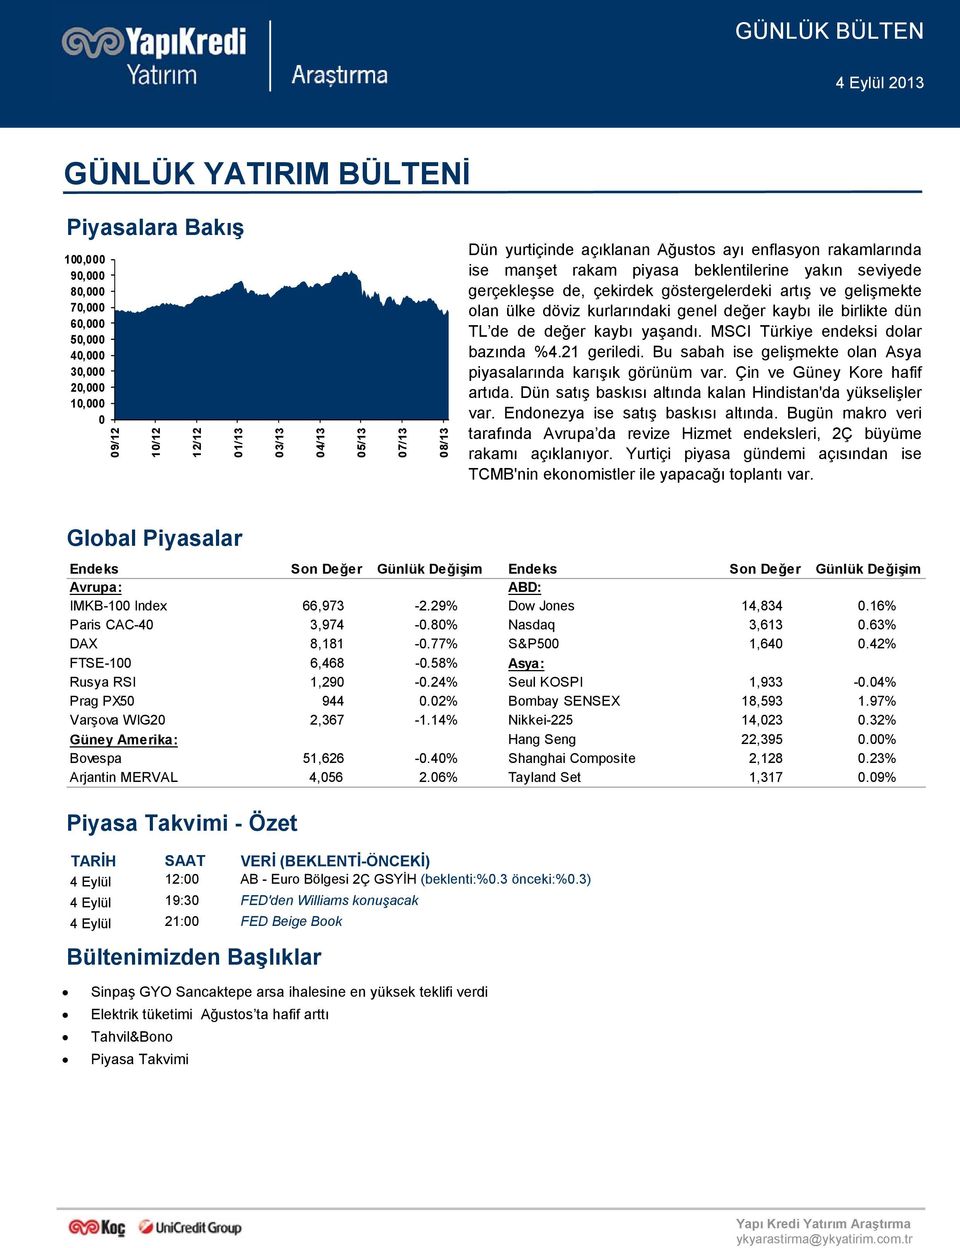 genel değer kaybı ile birlikte dün TL de de değer kaybı yaşandı. MSCI Türkiye endeksi dolar bazında %4.21 geriledi. Bu sabah ise gelişmekte olan Asya piyasalarında karışık görünüm var.